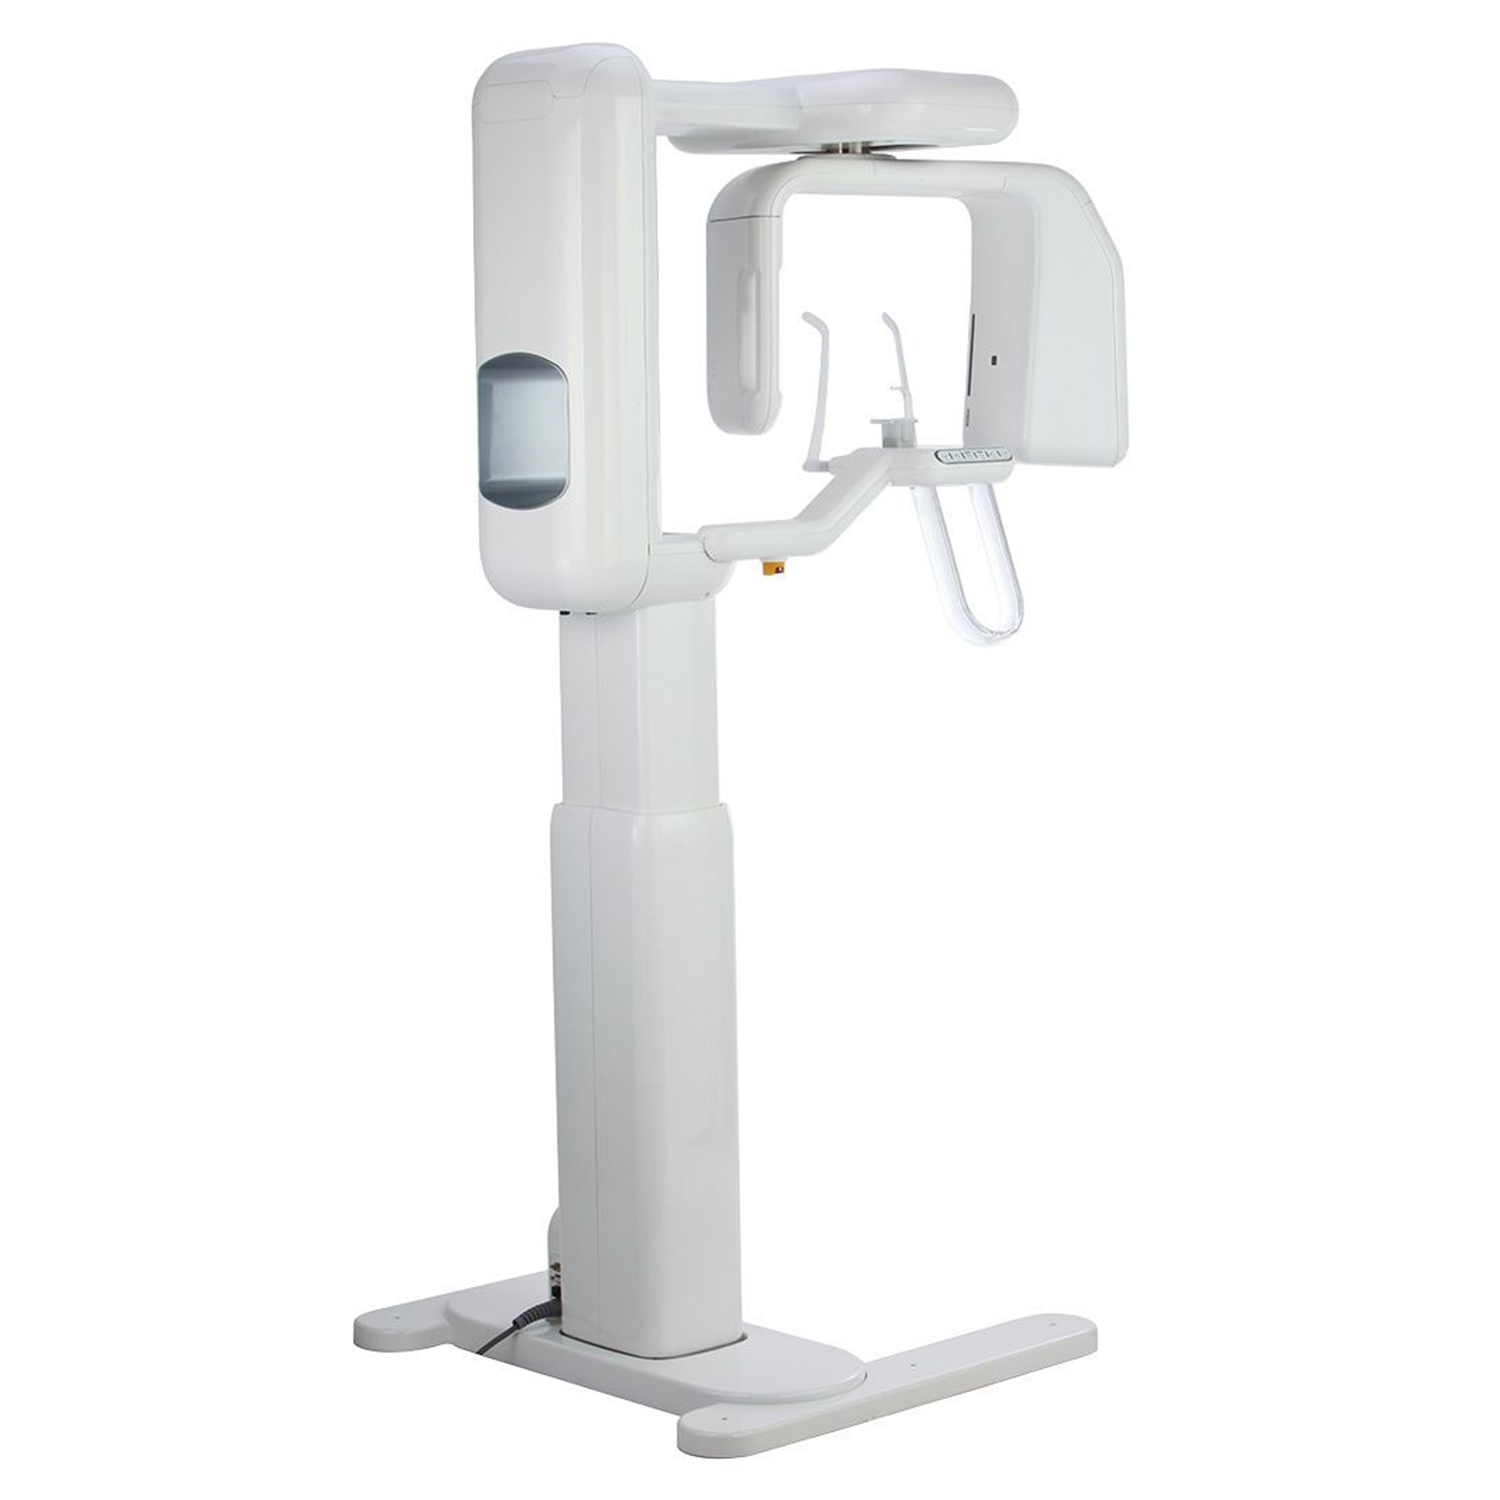 Система панорамная стоматологическая с модулем цефалостата GENORAY PAPAYA 2D